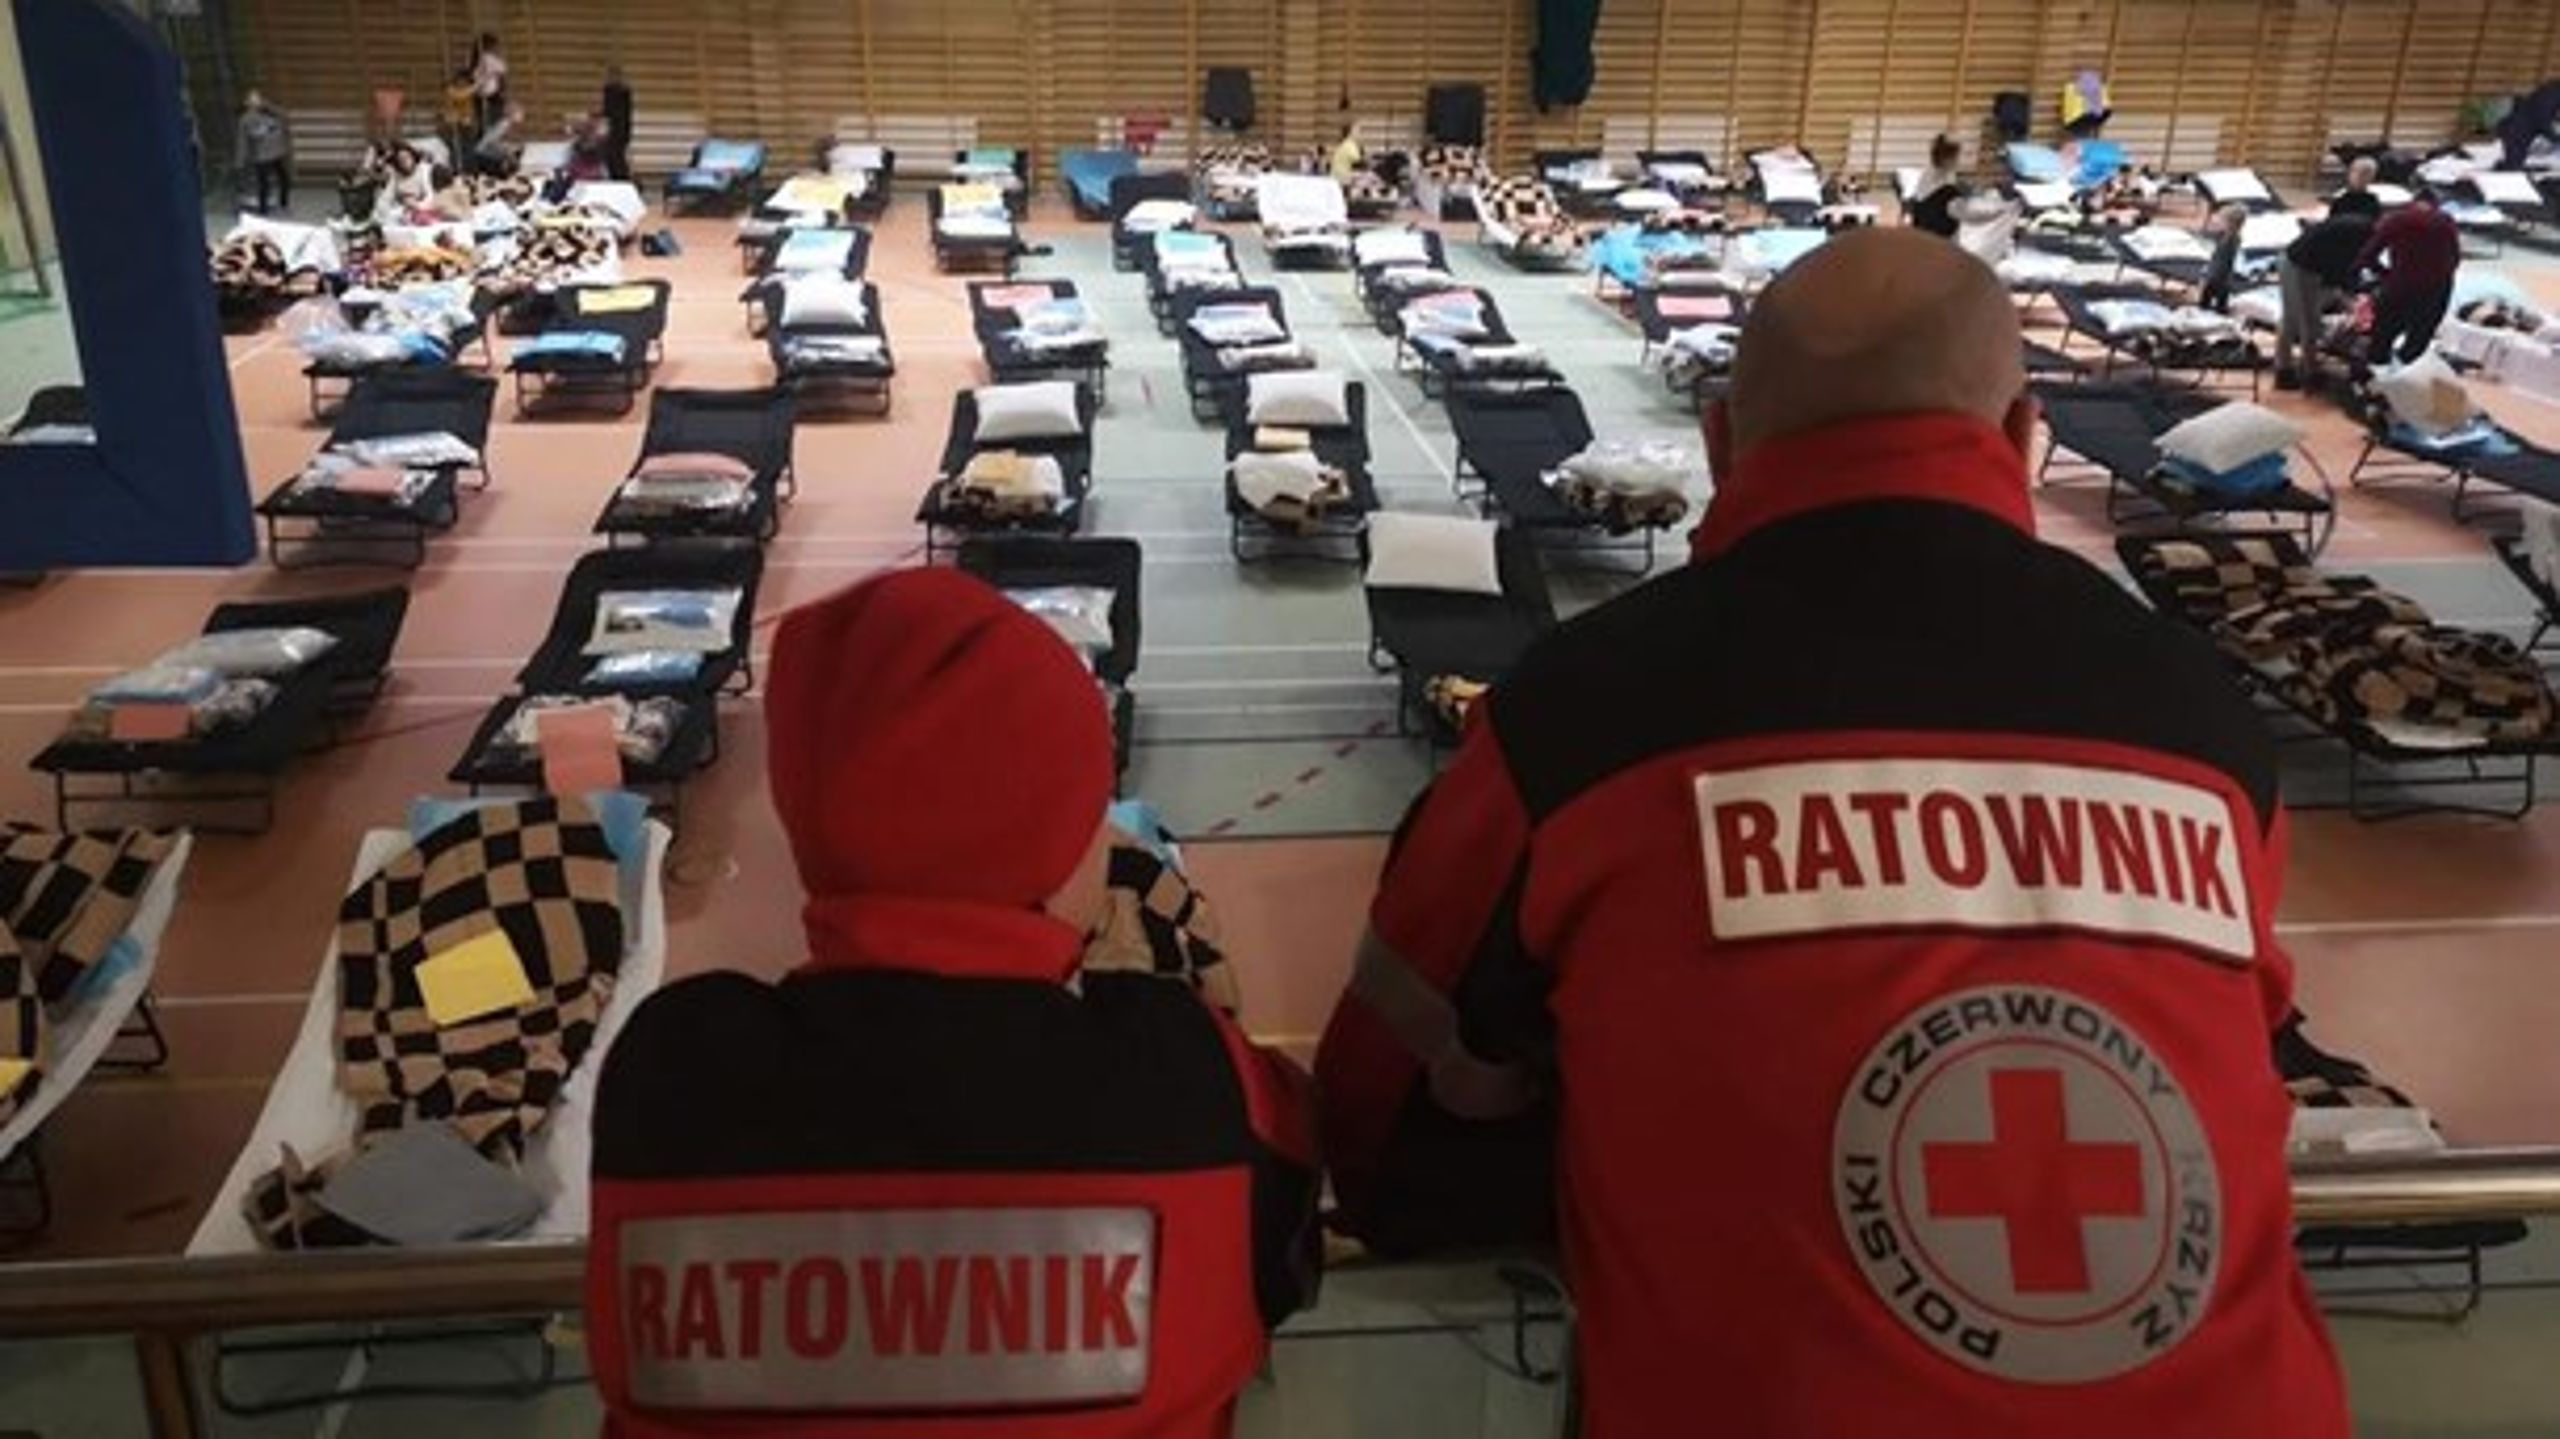 I interimistisk indrettede sovesale som denne yder dansk Røde Kors assistance til flygtende. Her dog fra Polen, som har modtaget en stor del af&nbsp;de 660.000 ukrainere, som ifølge UNHCR's opgørelser er flygtet i løbet af den første uge under den russiske invasion af Ukraine.&nbsp;&nbsp;